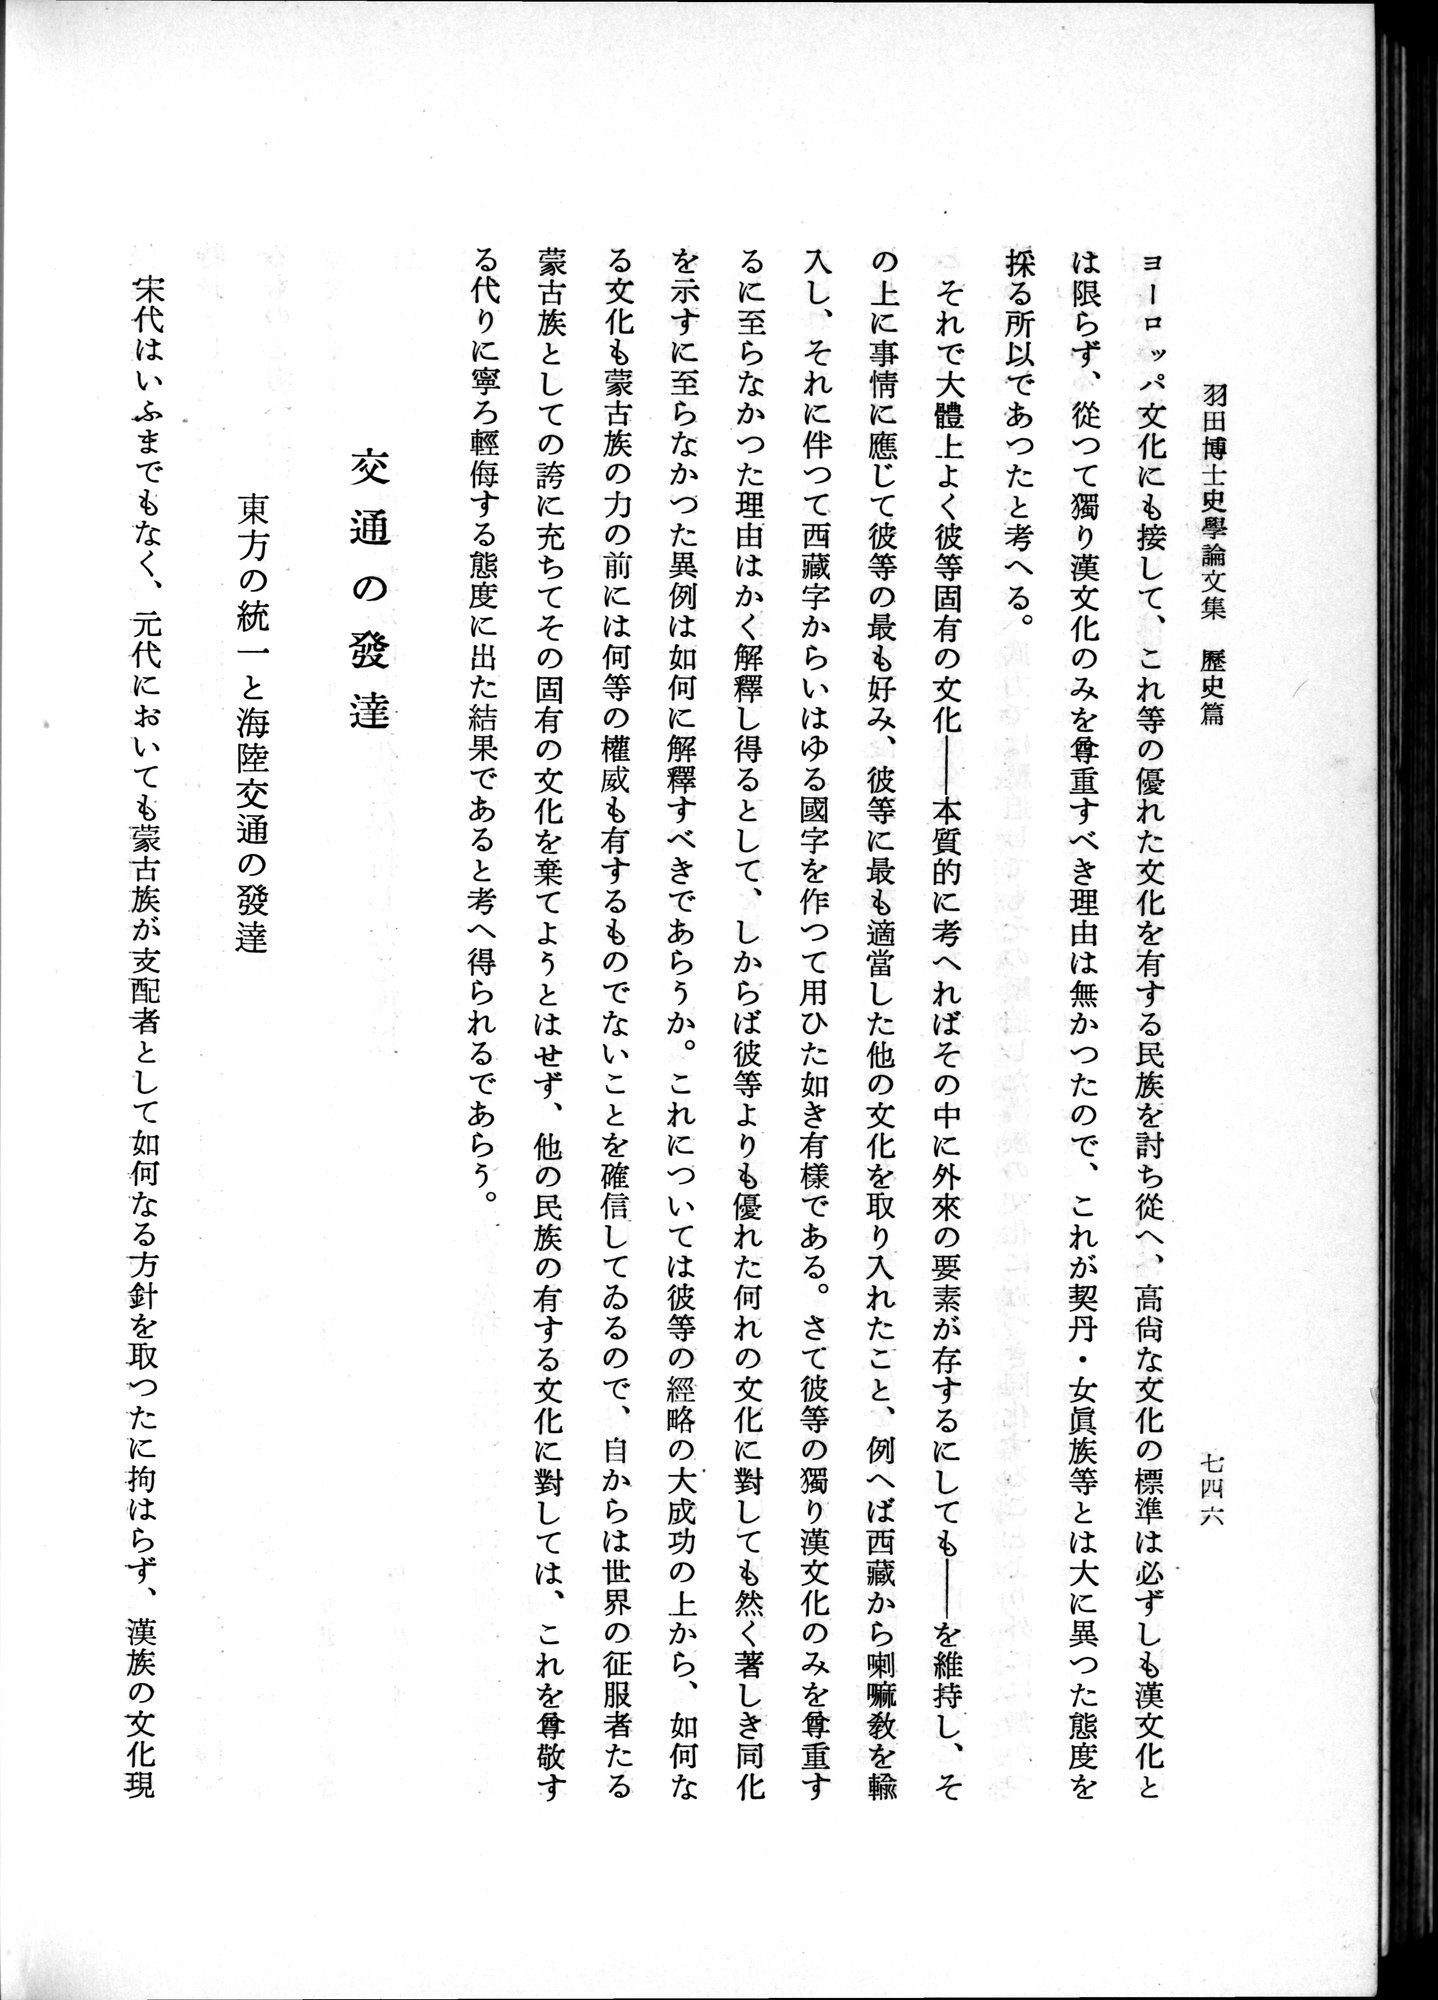 羽田博士史学論文集 : vol.1 / Page 784 (Grayscale High Resolution Image)